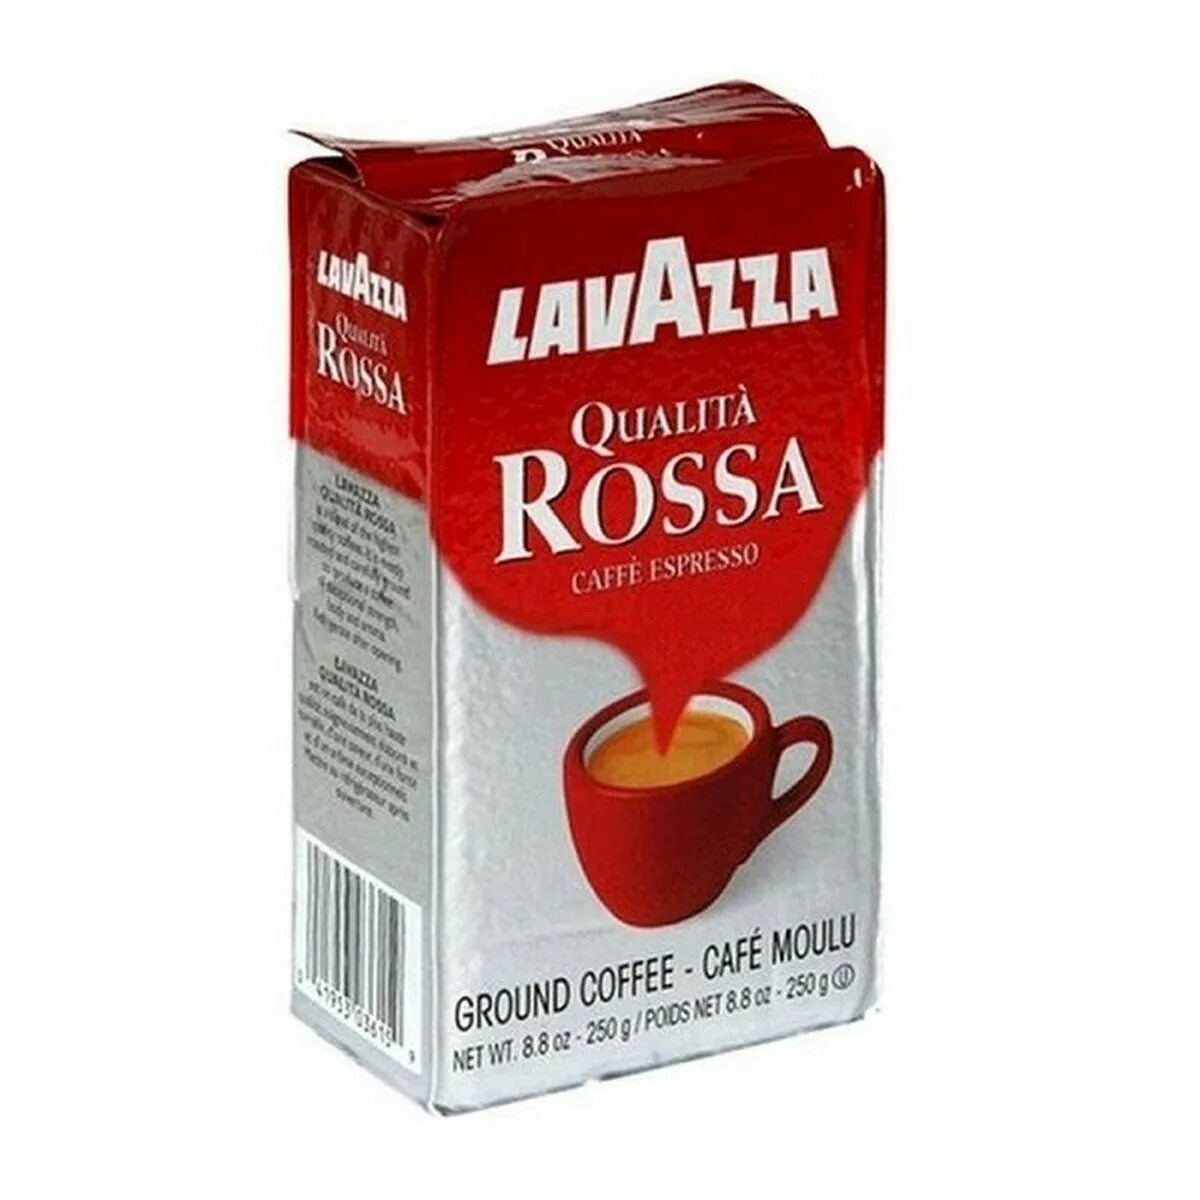 Кофе молотый красный. Lavazza qualita Rossa 250 молотый. Кофе молотый Lavazza qualita Rossa 250гр. Кофе Lavazza Rossa, молотый, 250 г. Кофе молотый Lavazza Rossa 250 g.